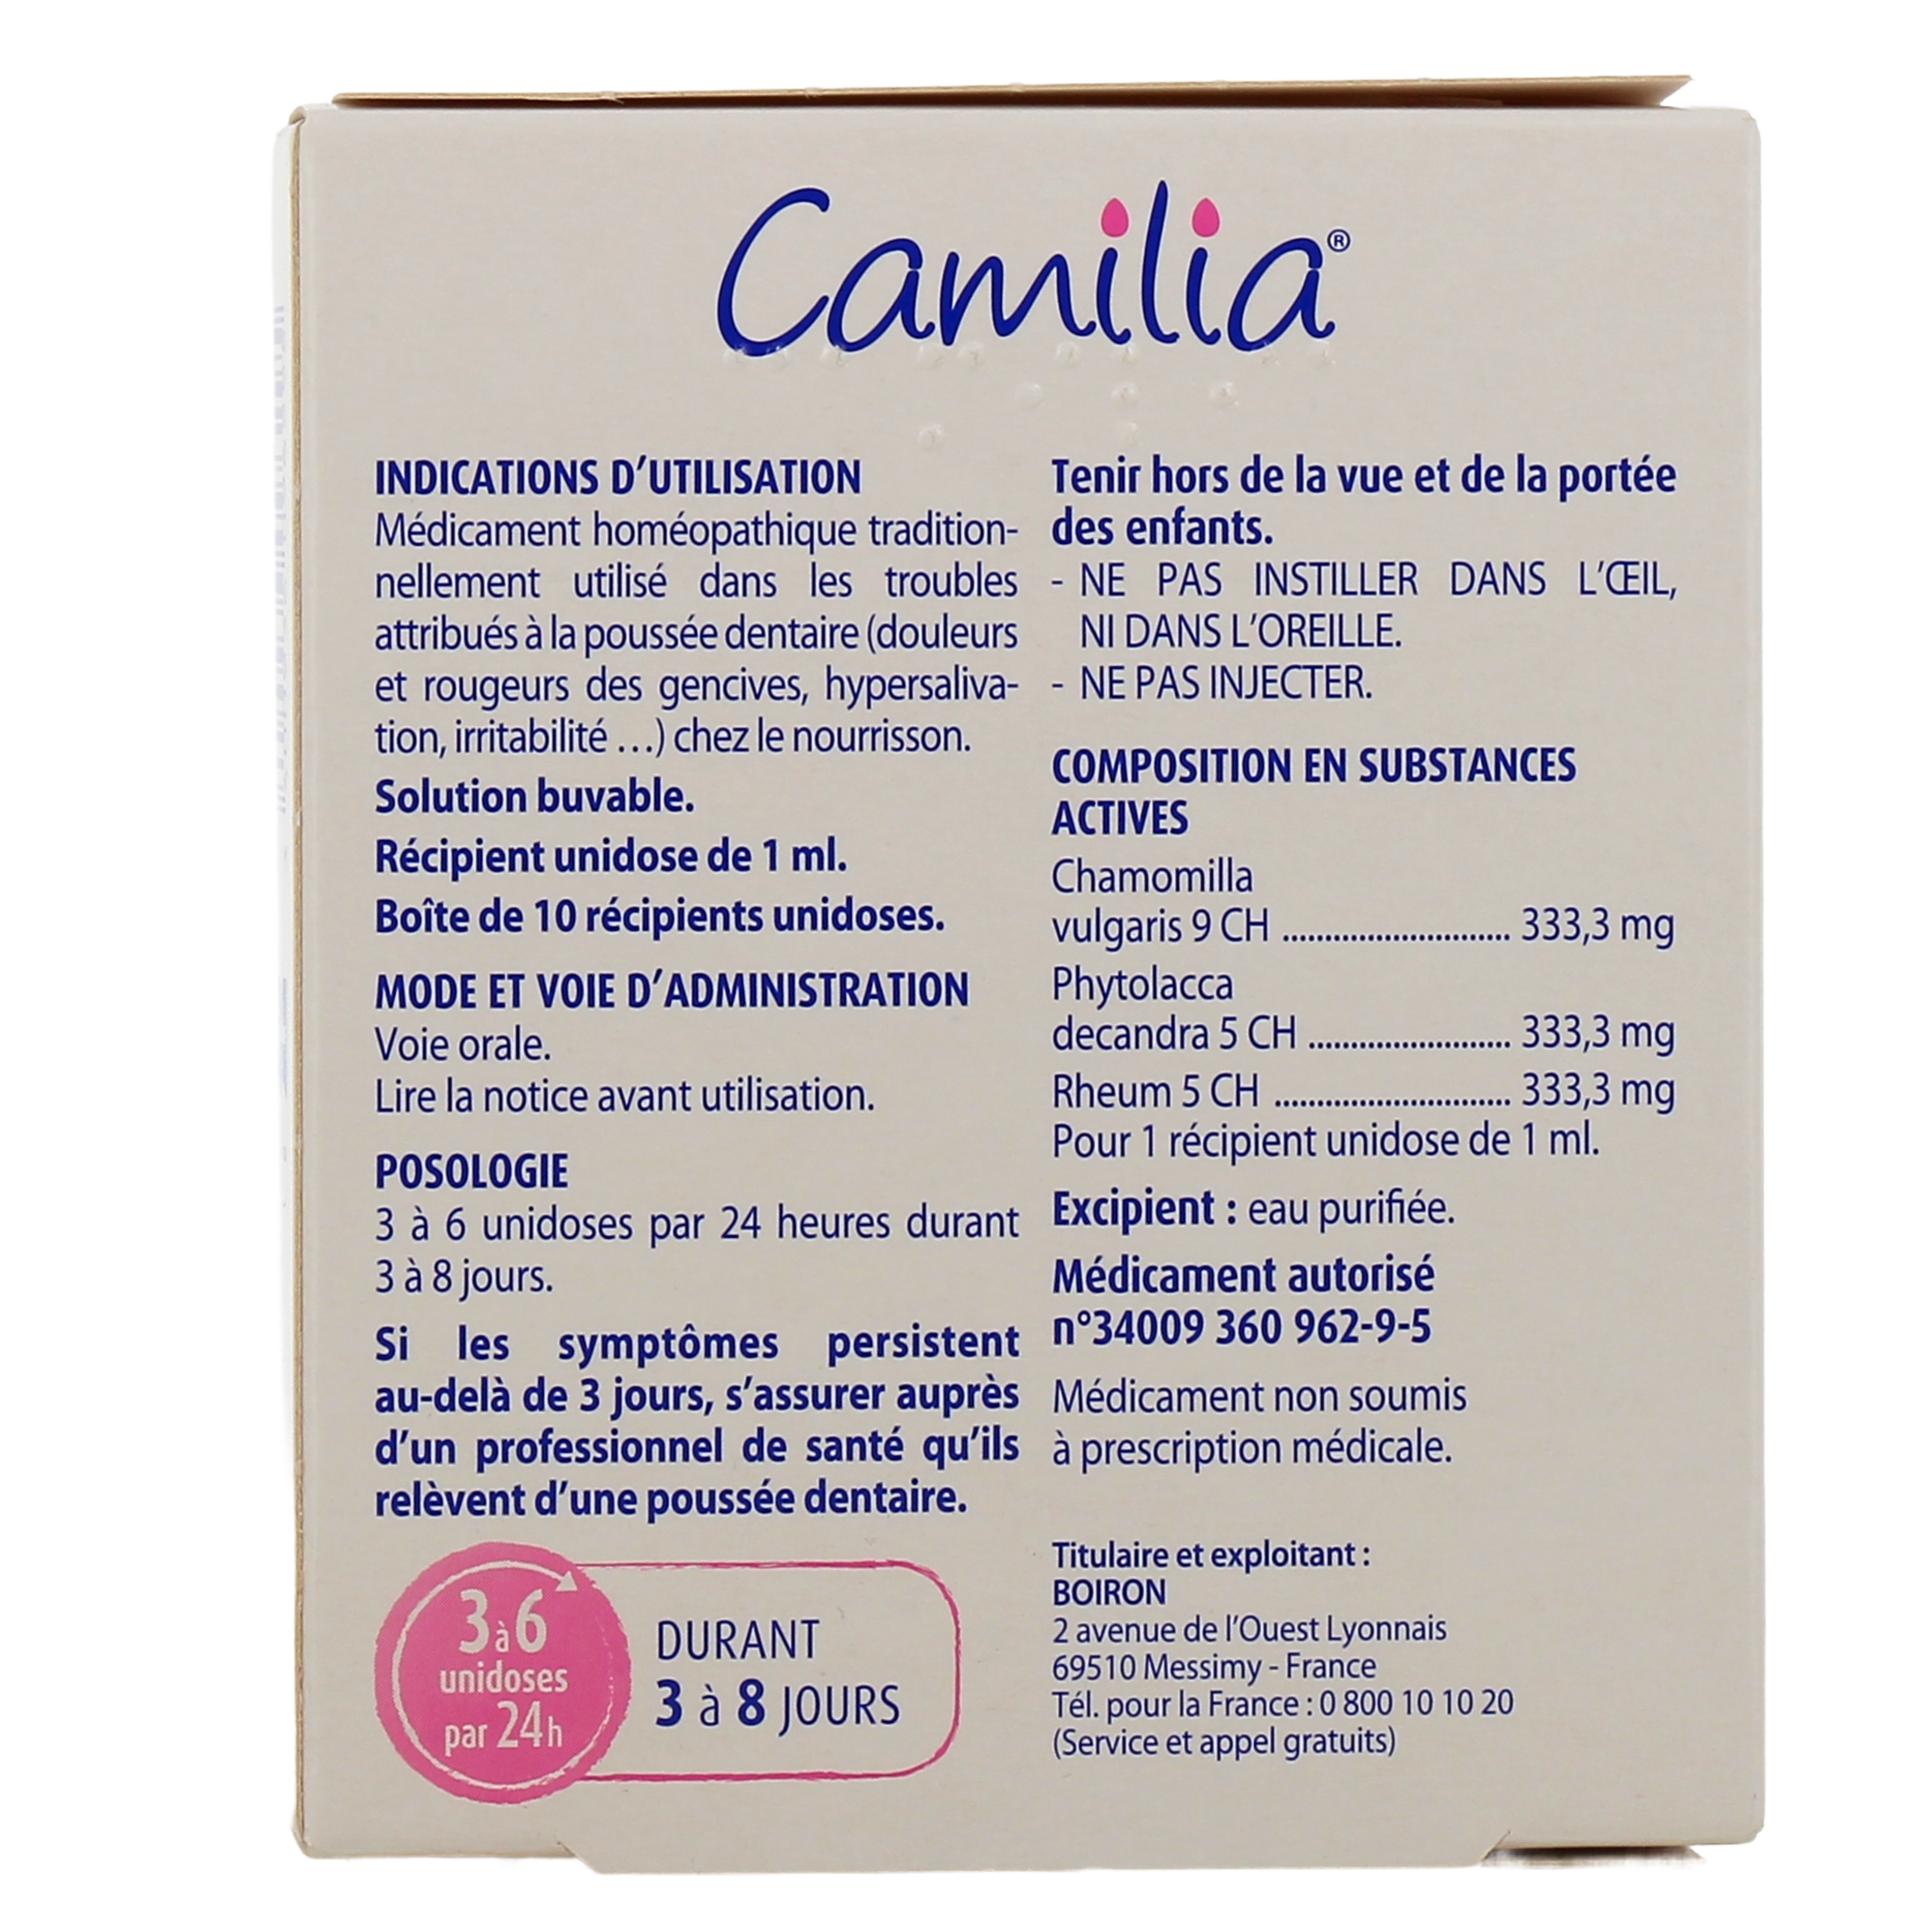 Camilia Troubles Attribués A La Dentition Chez Le Nourrisson Solution  Buvable 1 ml 30 Récipients Unidoses